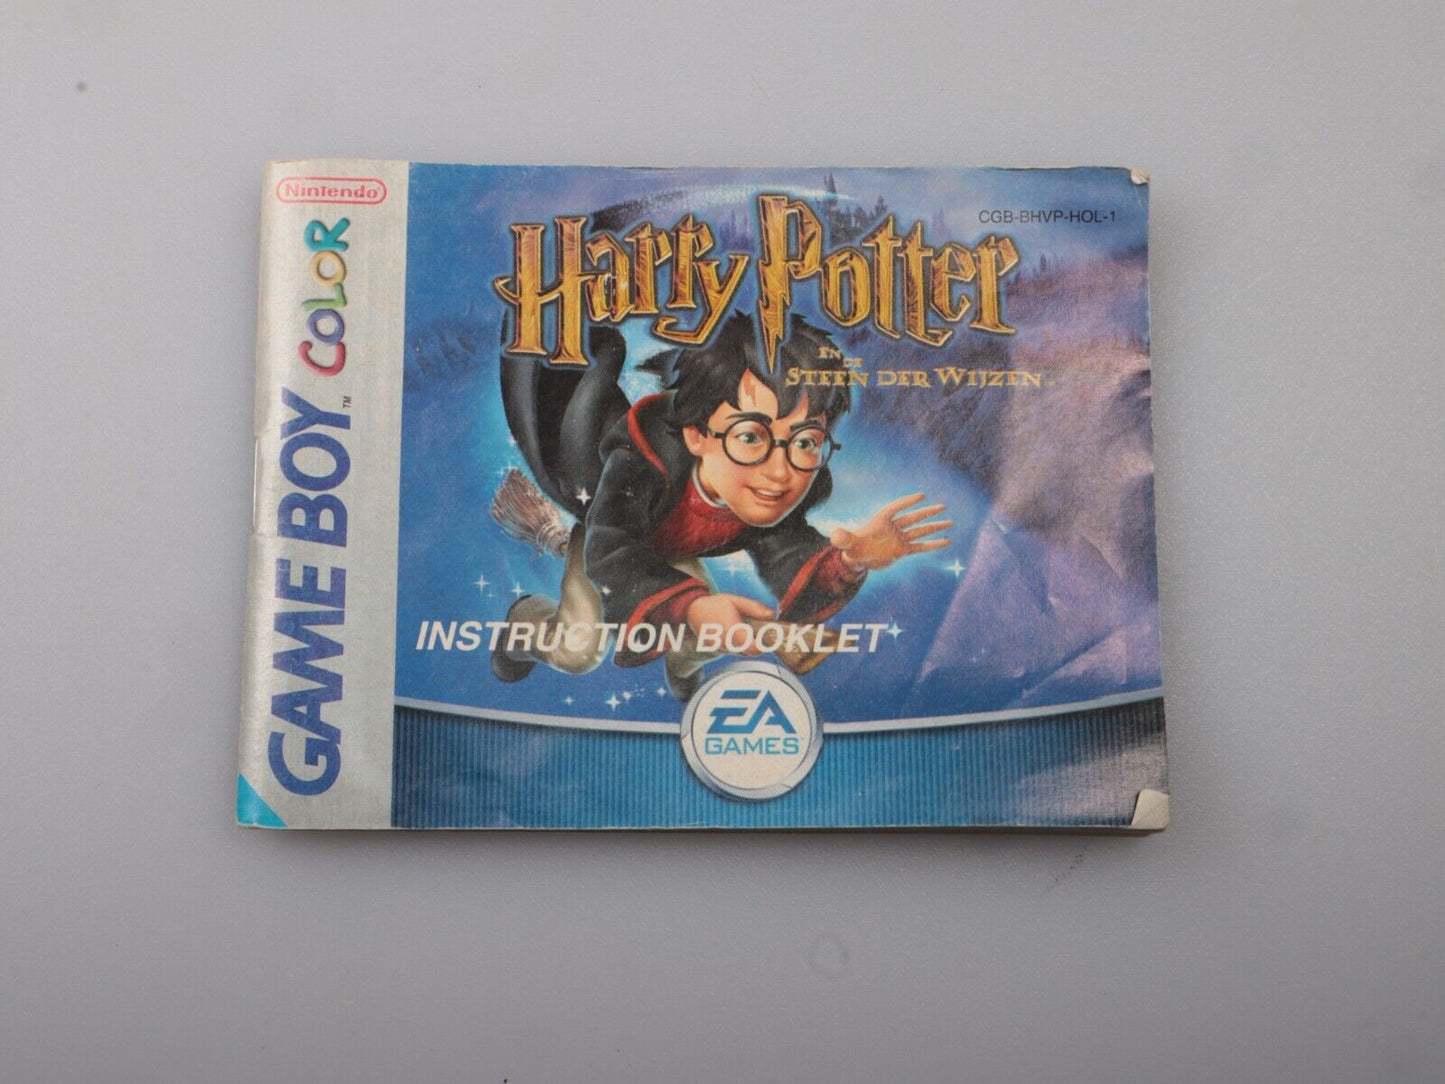 GBC | Gameboy-kleur | Harry Potter en de Sint van de Filosoof | EUR | Nintendo-cartridge 